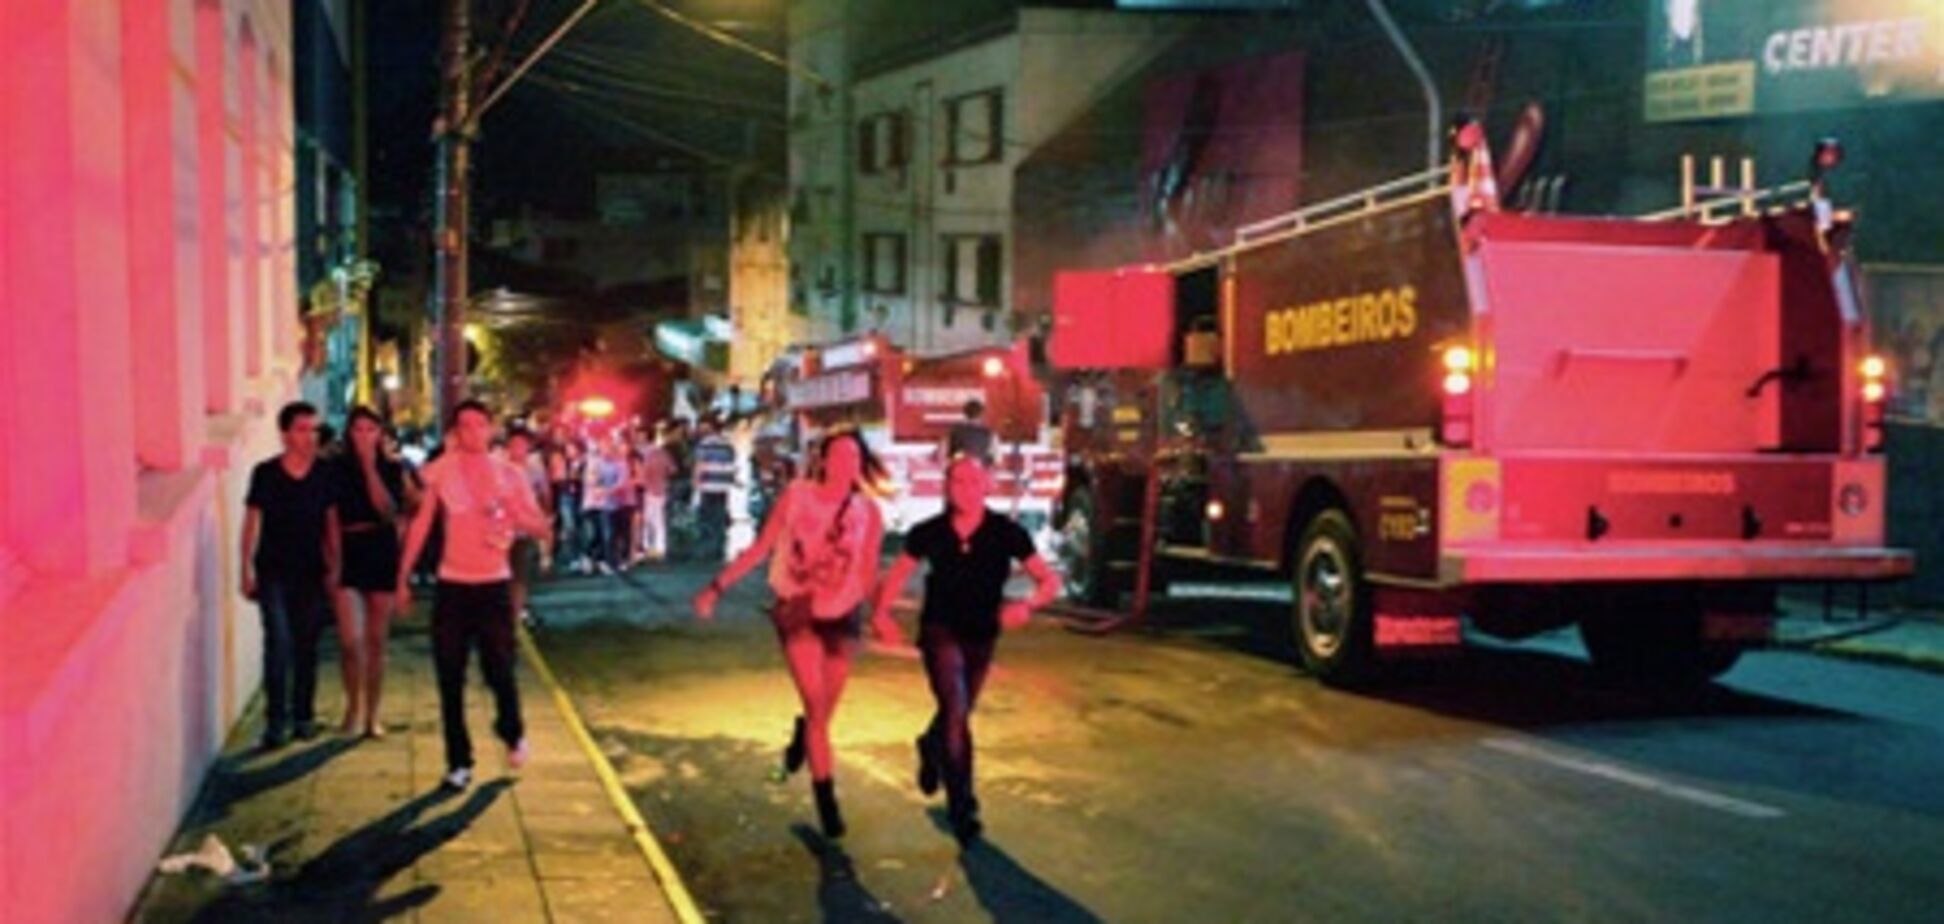 Пожар в бразильском клубе могли устроить музыканты - СМИ. Видео